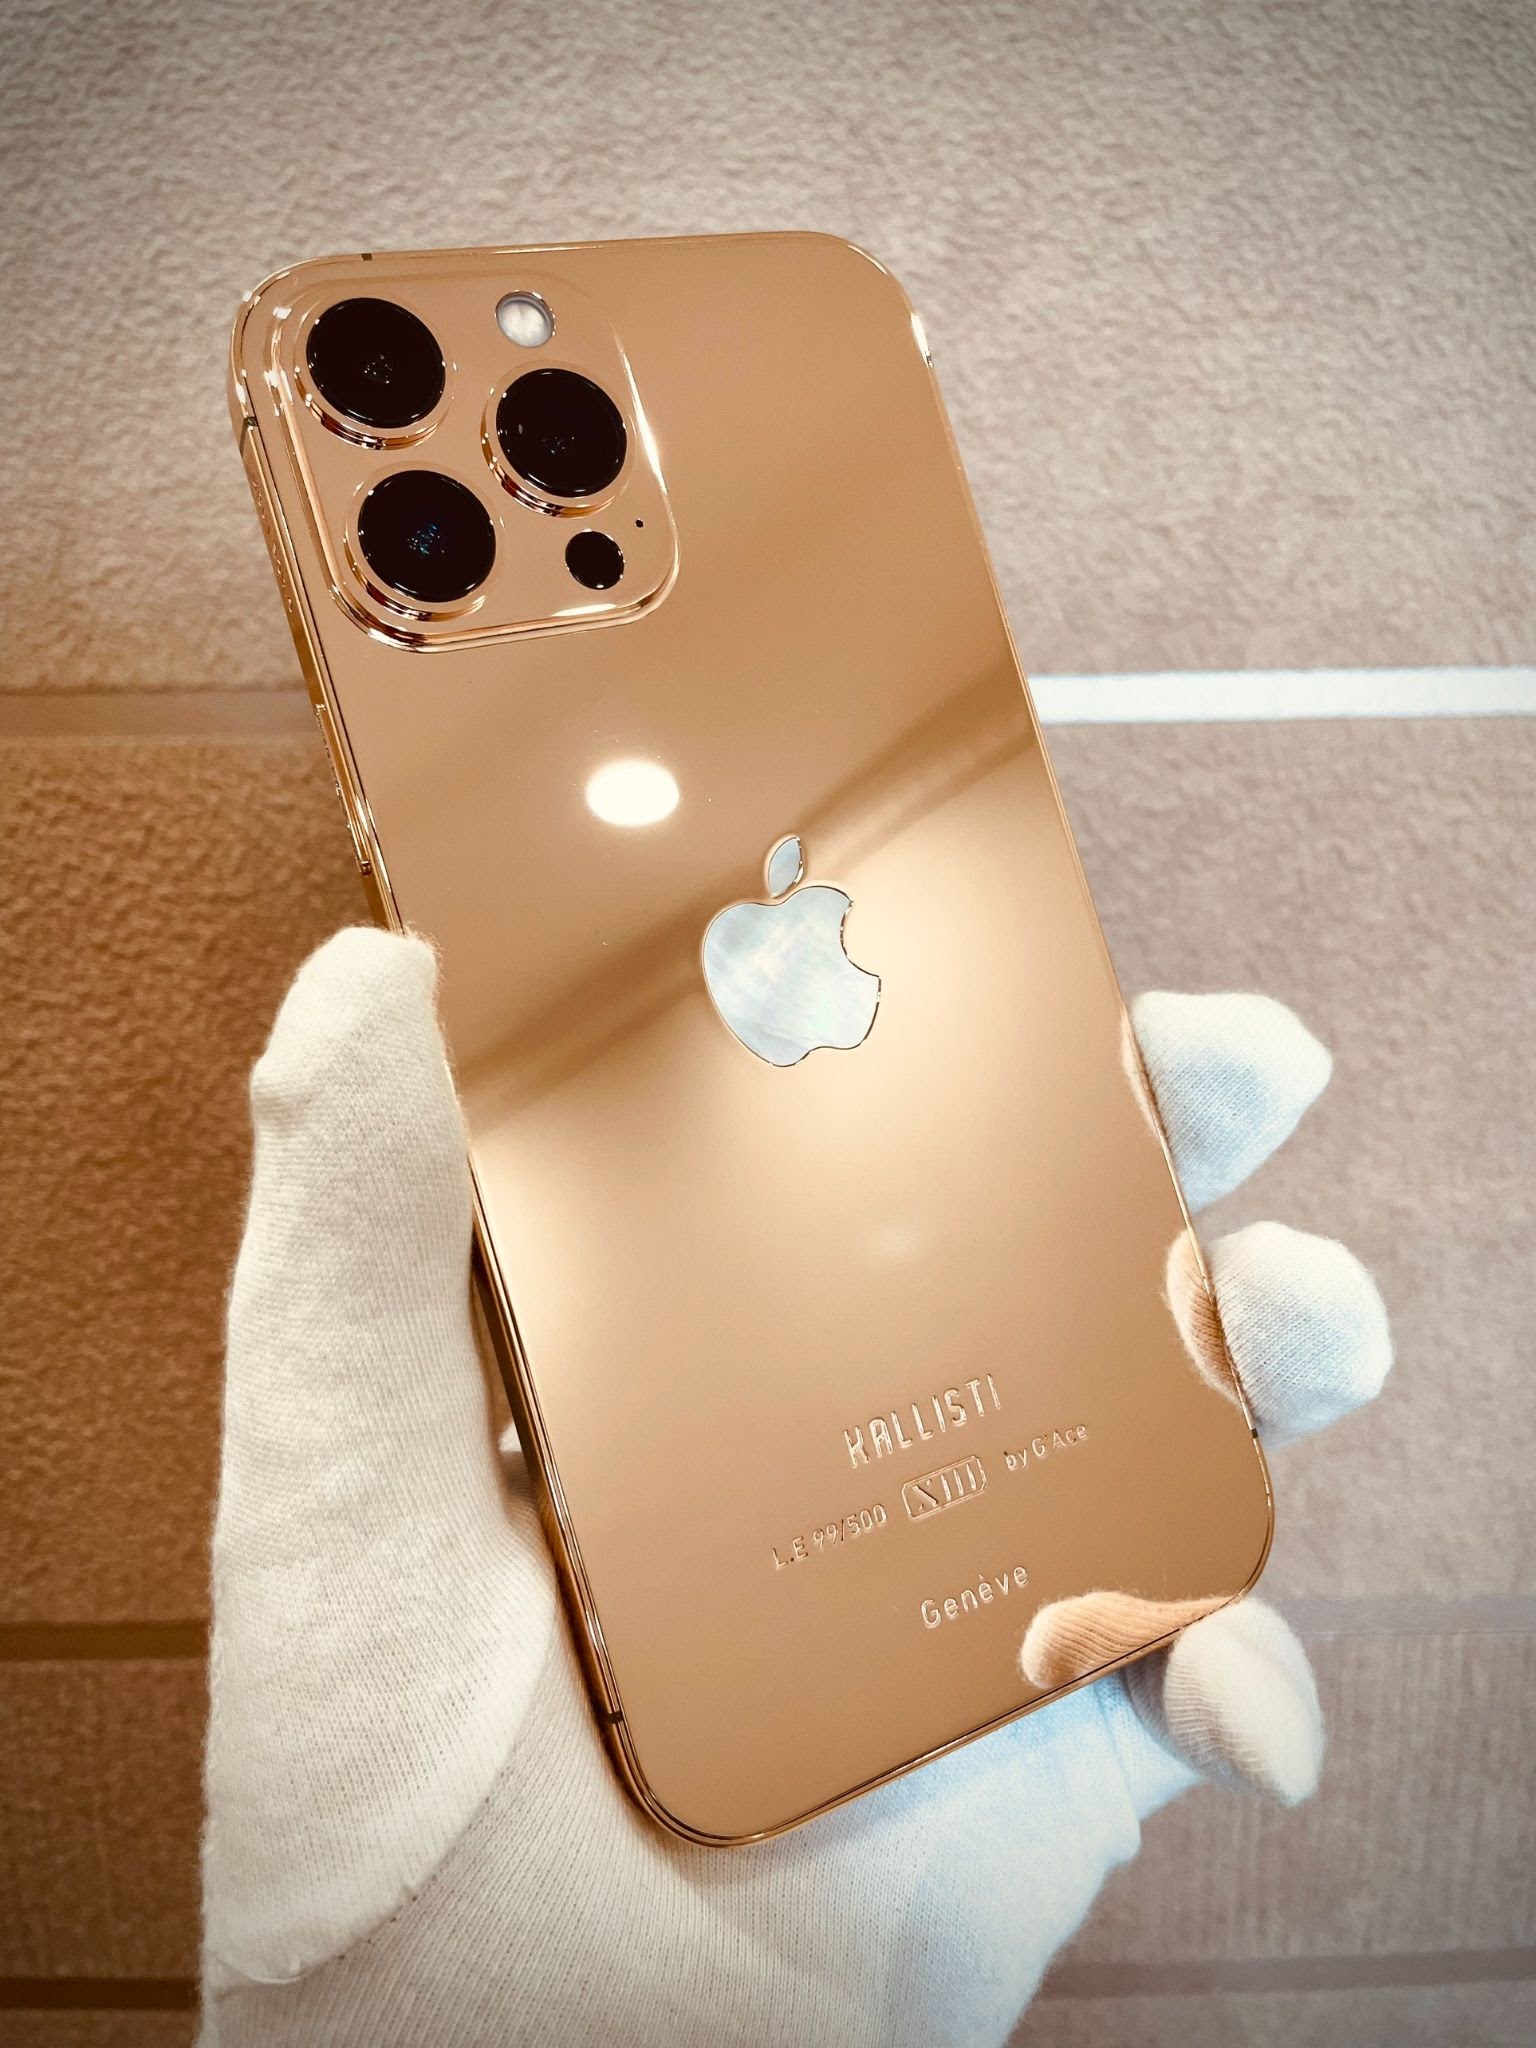 Điện thoại iPhone 13 Pro Max bản mạ vàng và kim cương là một sản phẩm vô cùng ấn tượng và tiên tiến. Bạn sẽ cảm thấy ngạc nhiên trước sự tinh tế và chăm chỉ của những người thiết kế đã tạo ra sản phẩm này.